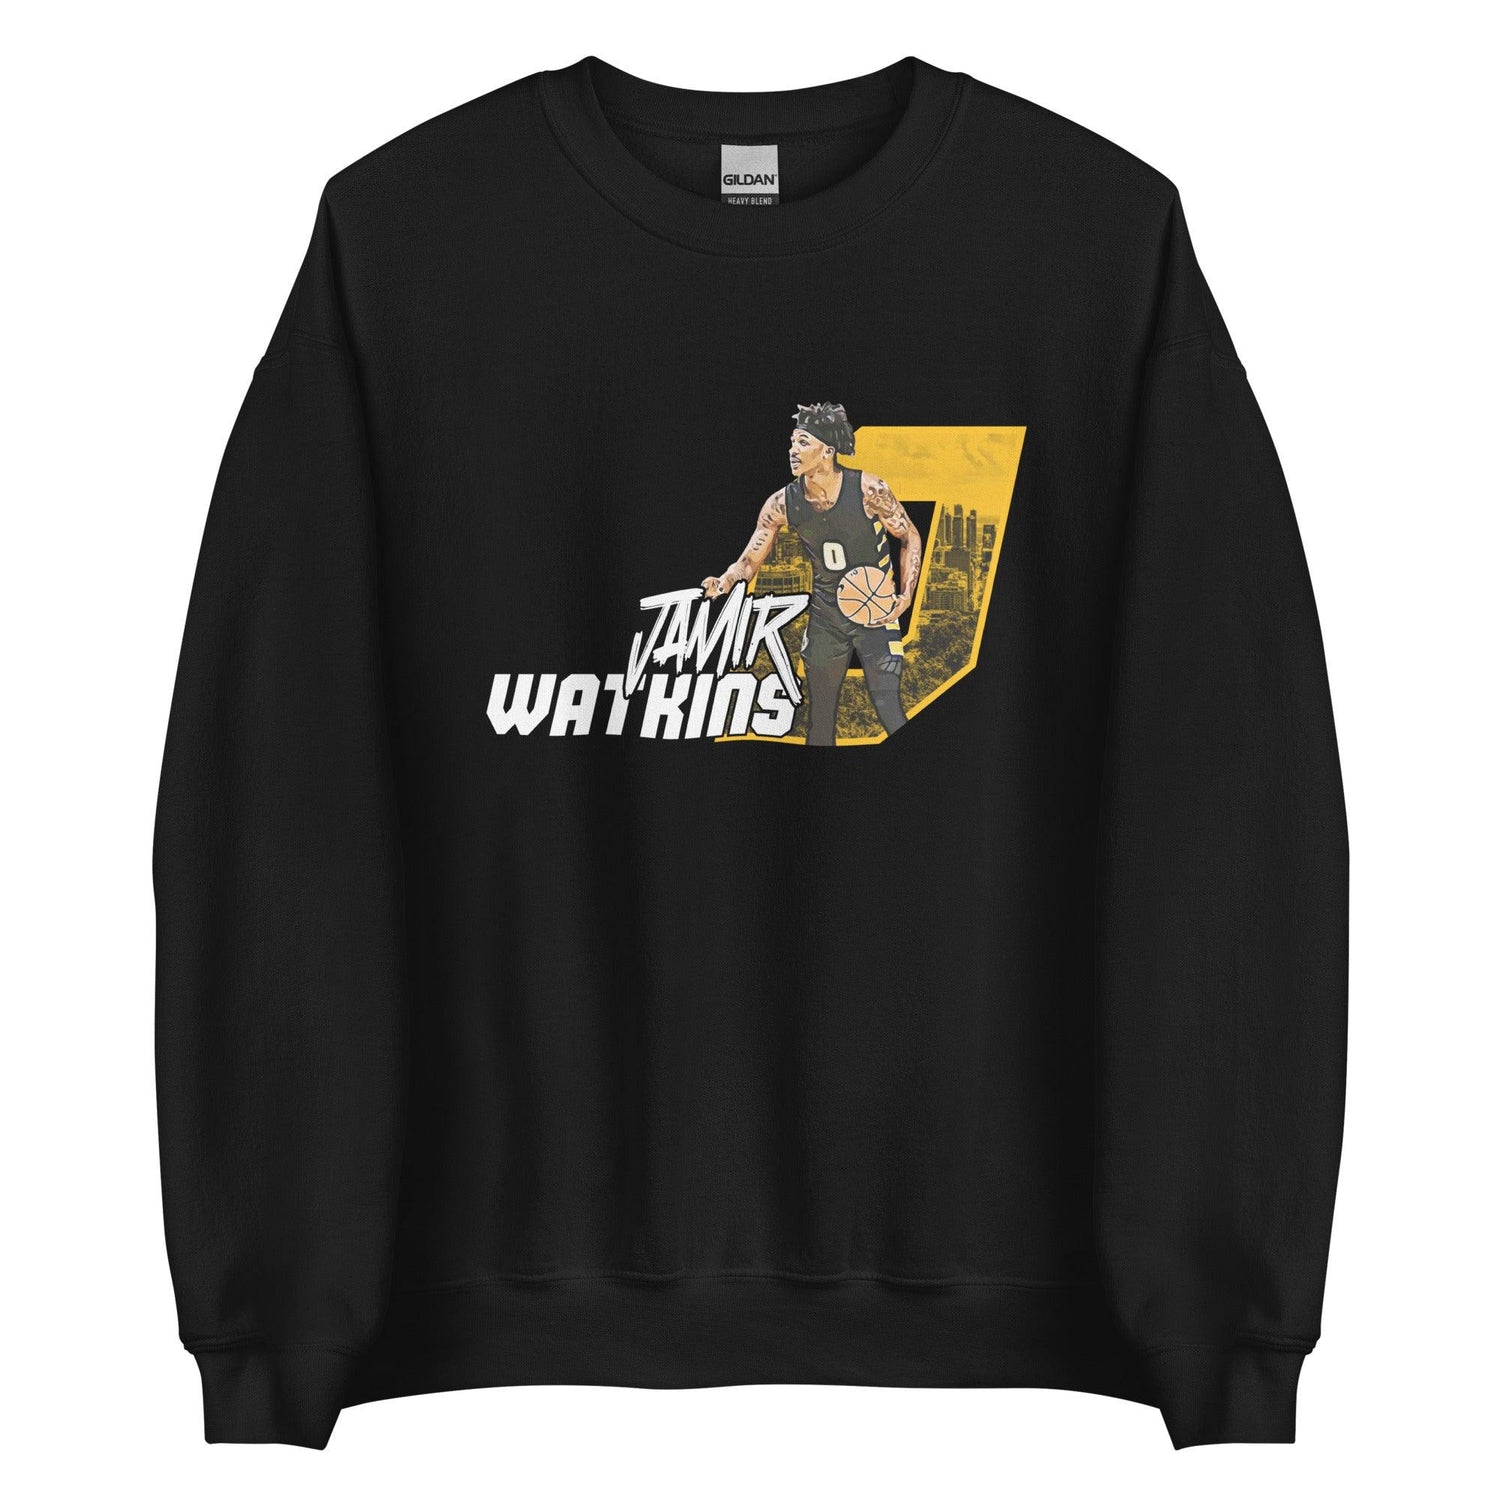 Jamir Watkins "Gameday" Sweatshirt - Fan Arch